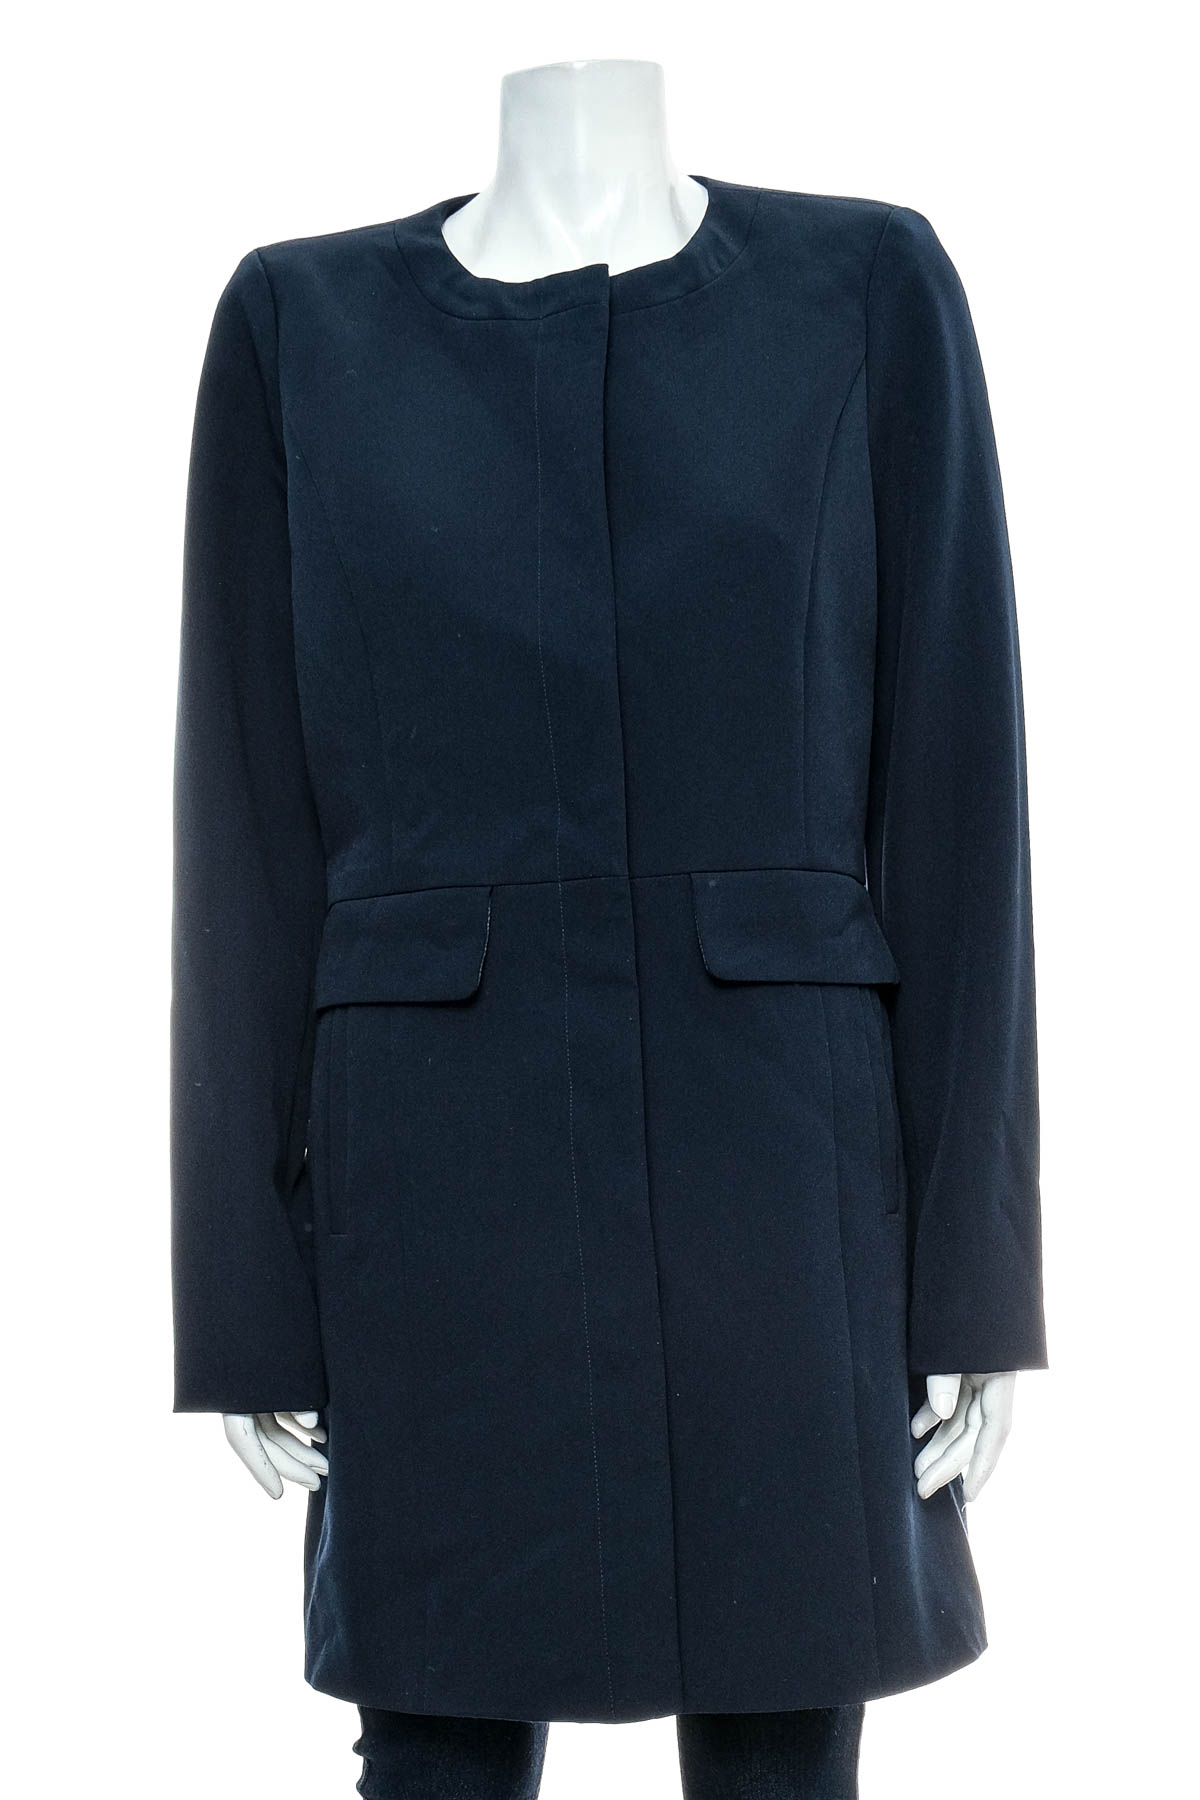 Women's coat - VERO MODA - 0